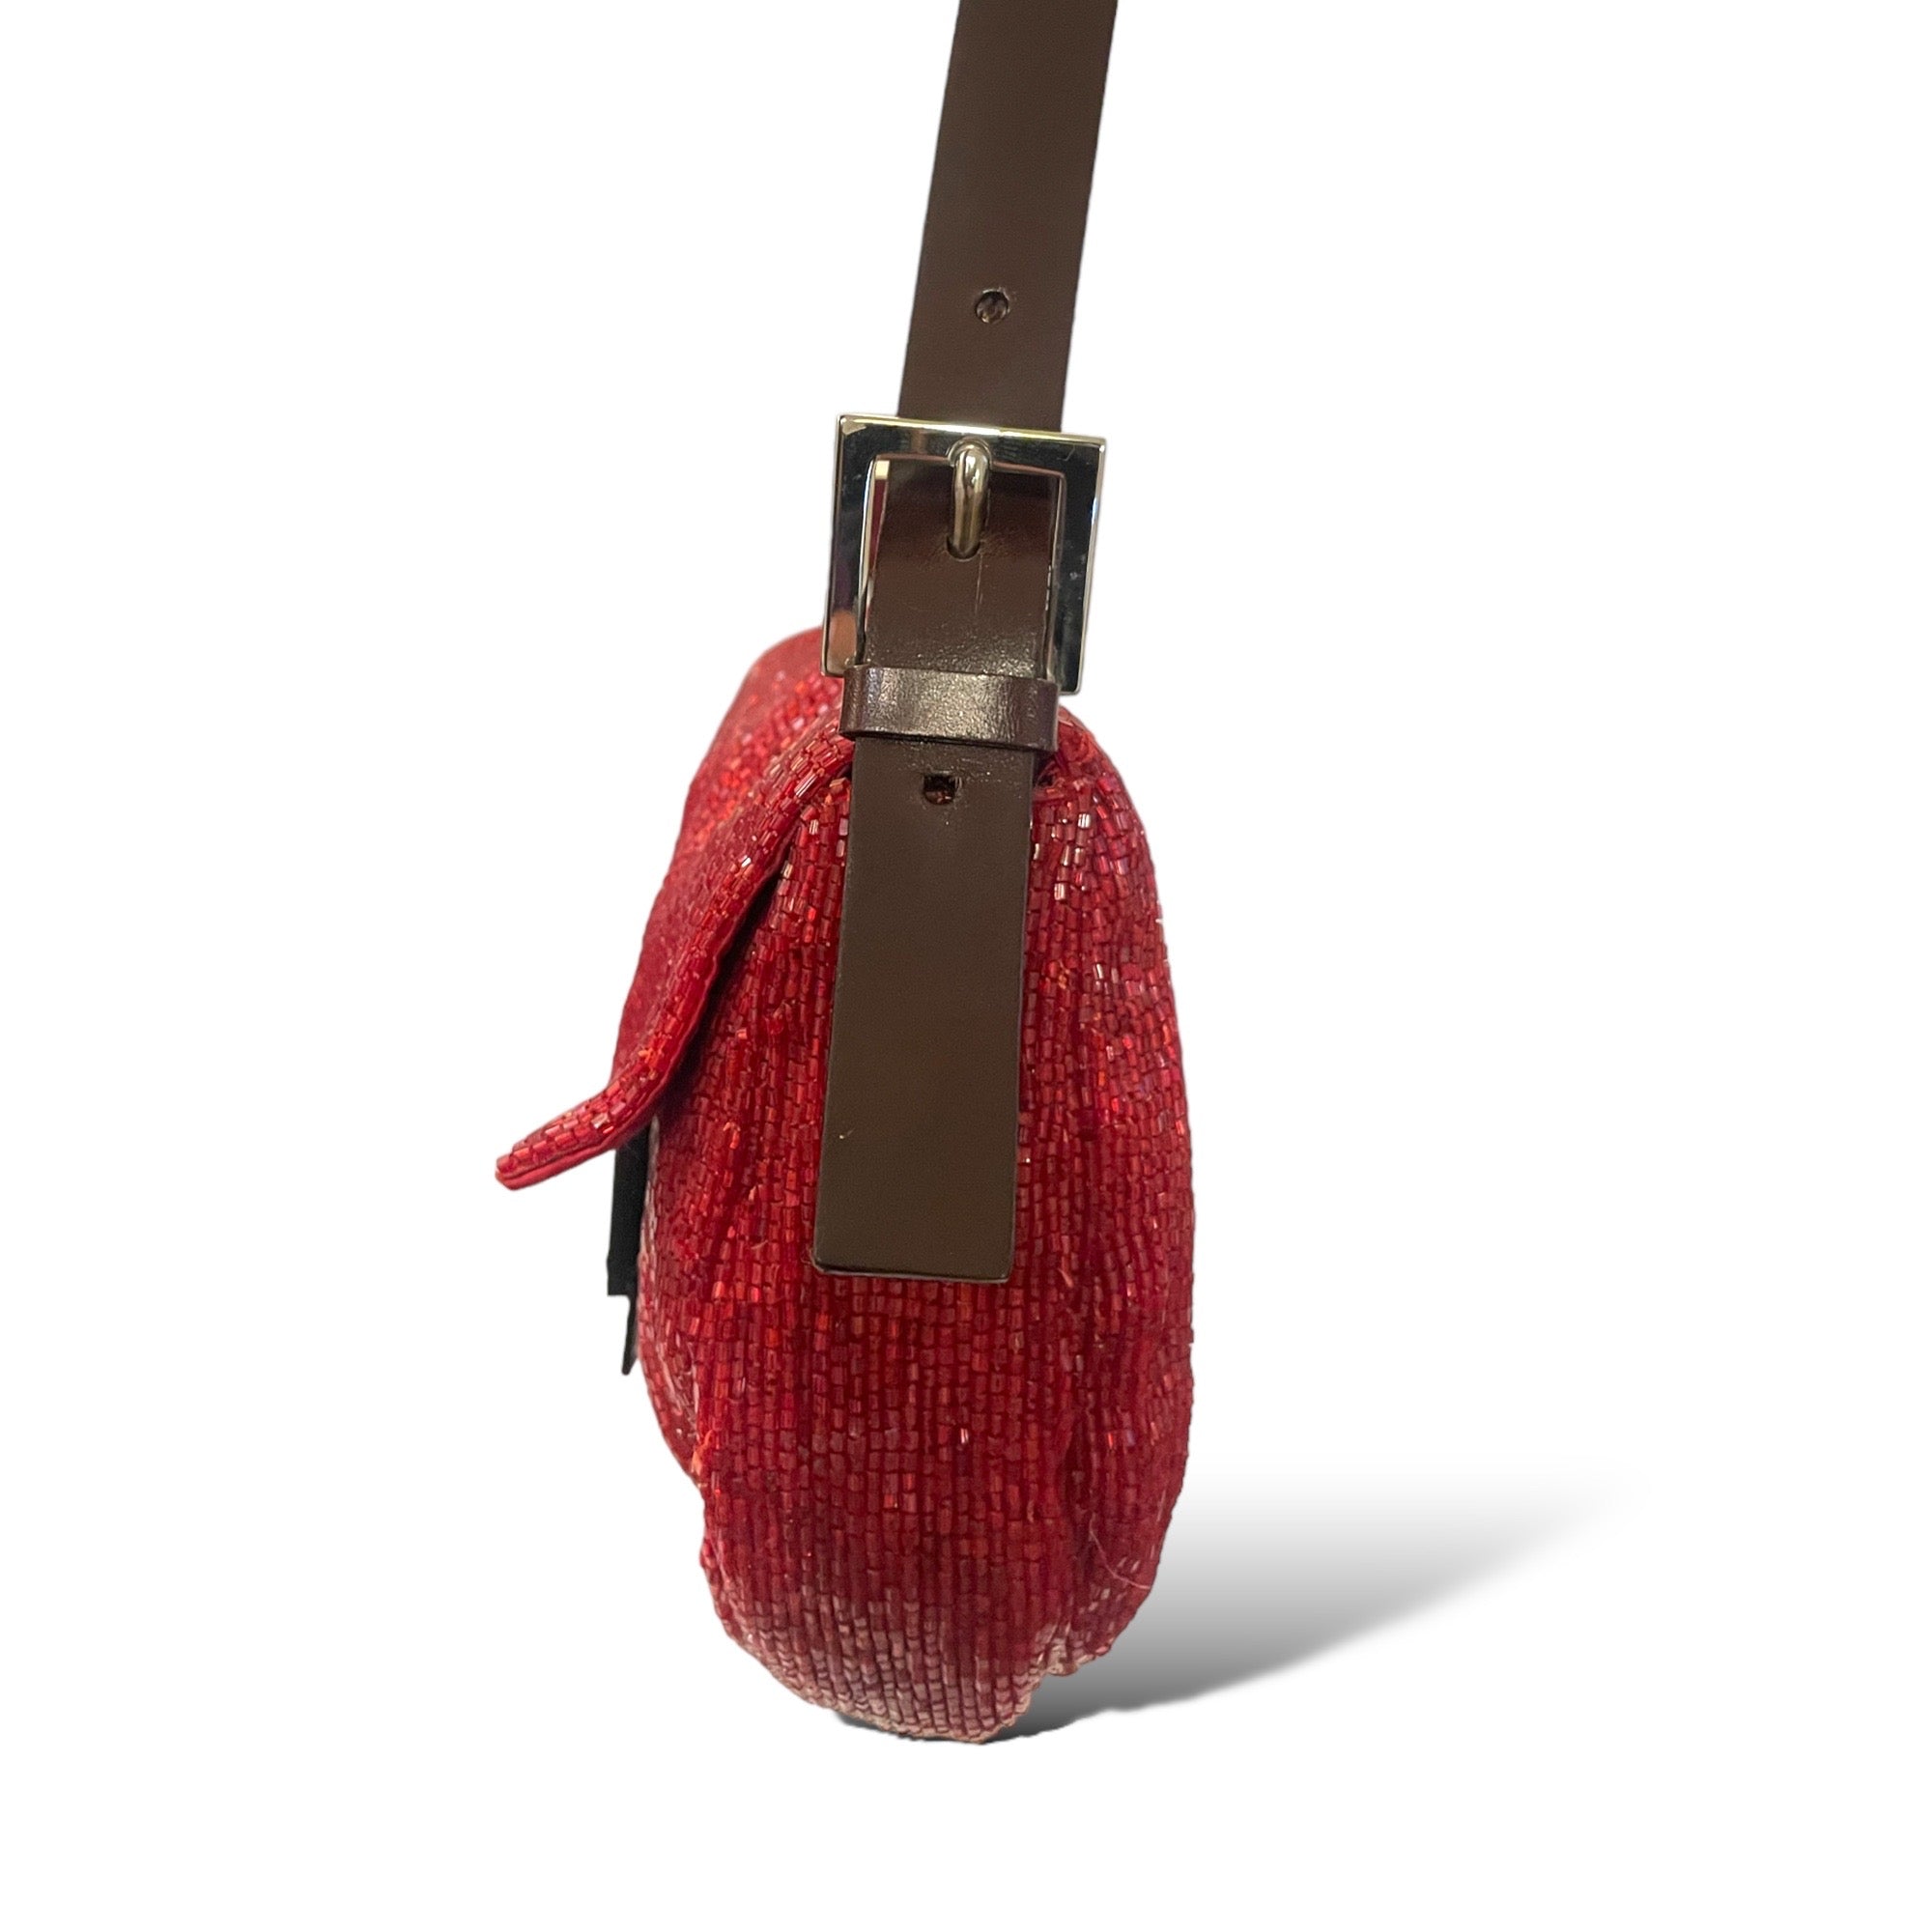 RARE Limited Edition FENDI Red Beaded Embellished Baguette Bag